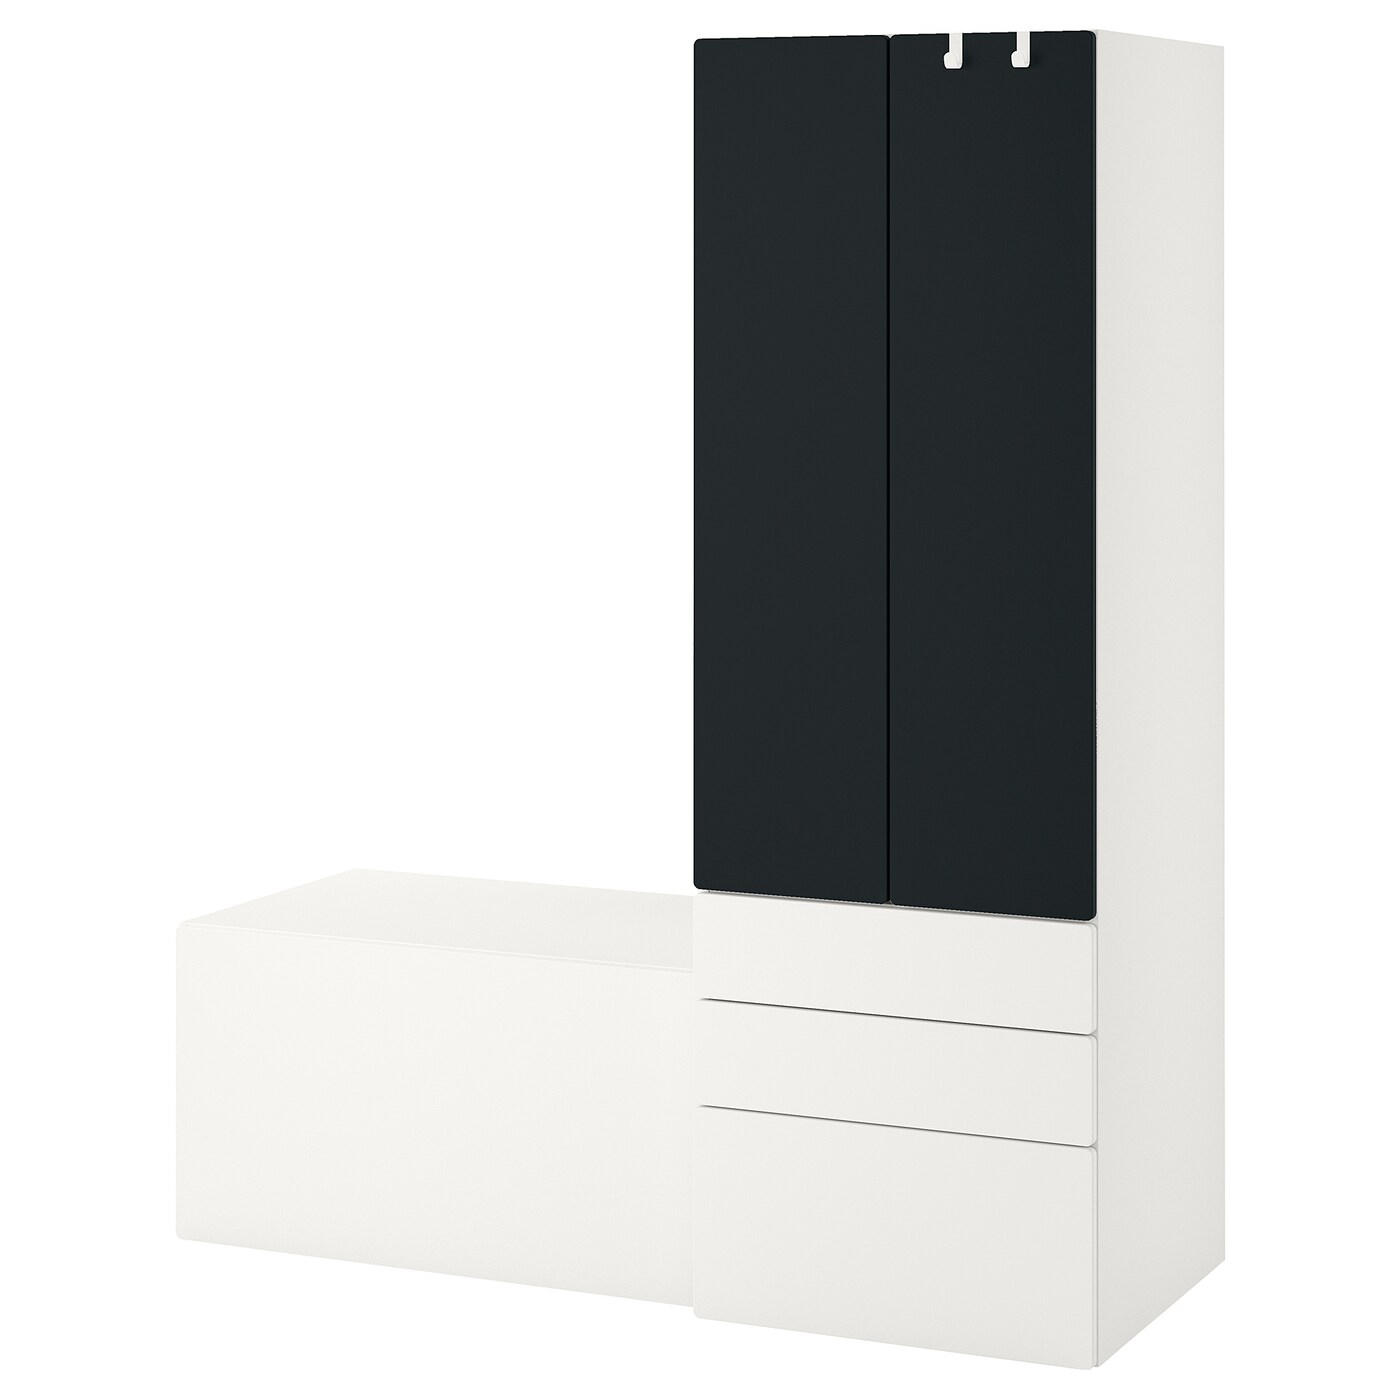 Детская гардеробная комбинация - IKEA PLATSA SMÅSTAD/SMASTAD, 181x57x150см, белый/черный, ПЛАТСА СМОСТАД ИКЕА